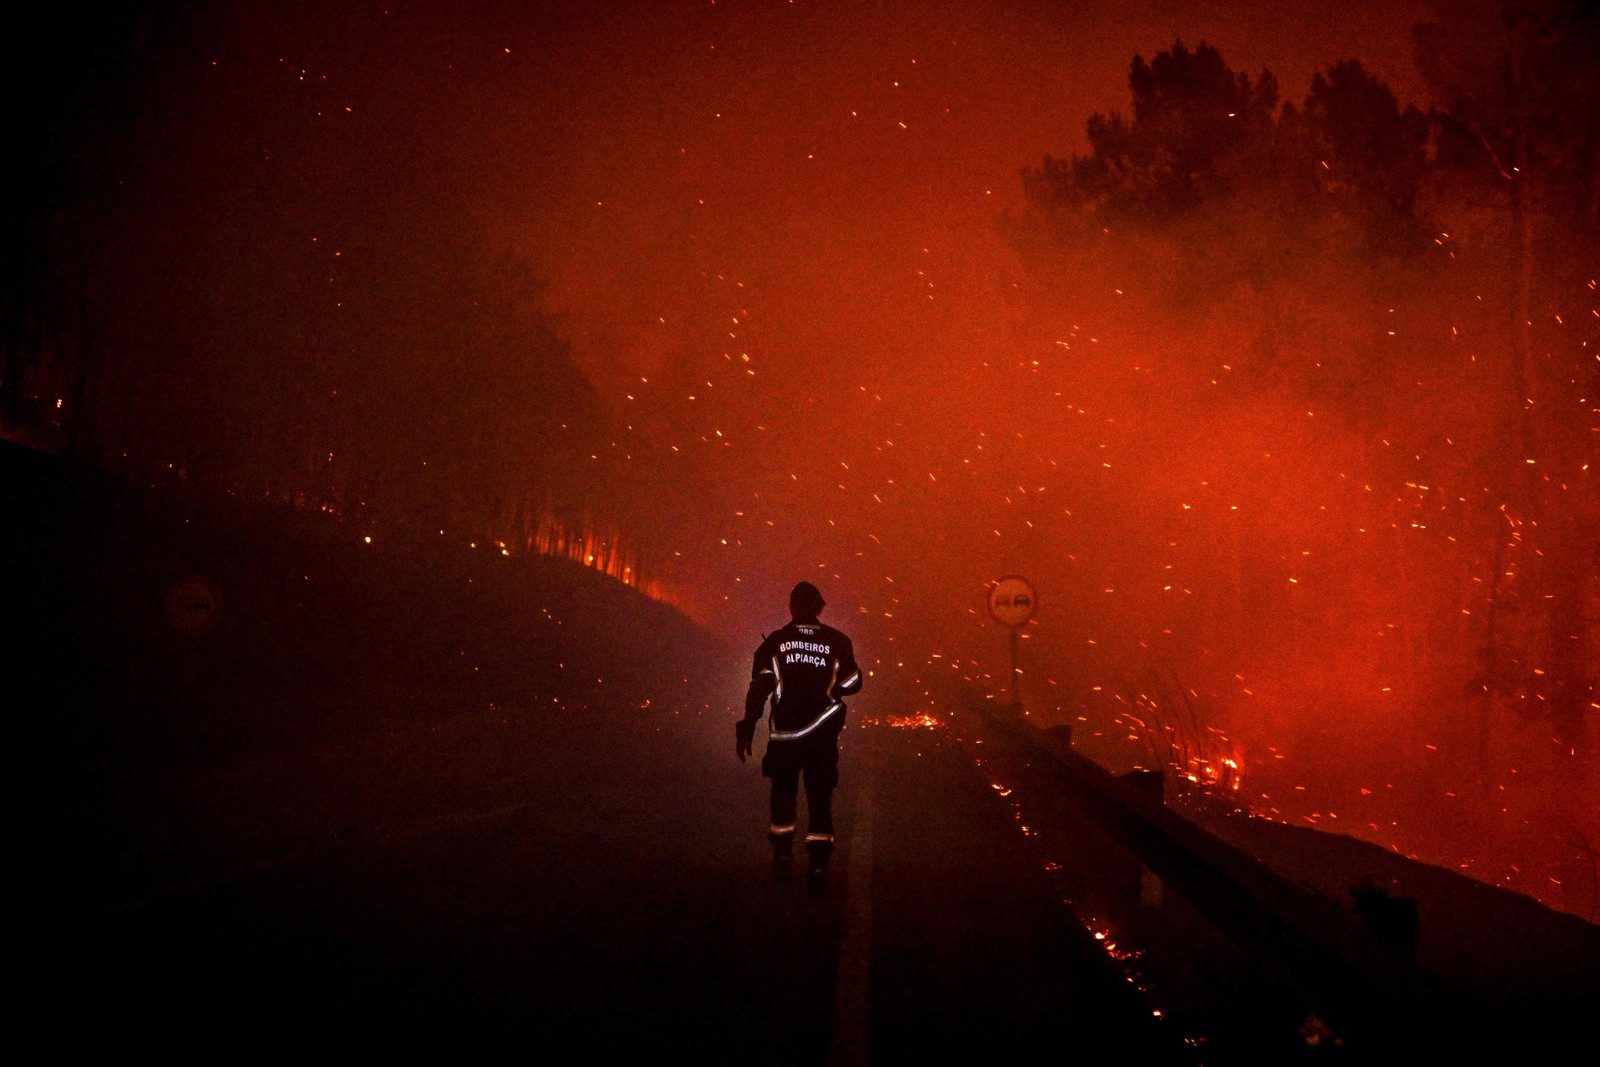 Bombeiro caminha por uma estrada durante um incêndio florestal em Manteigas, centro de Portugal, em 10 de agosto. — Foto: PATRICIA DE MELO MOREIRA / AFP